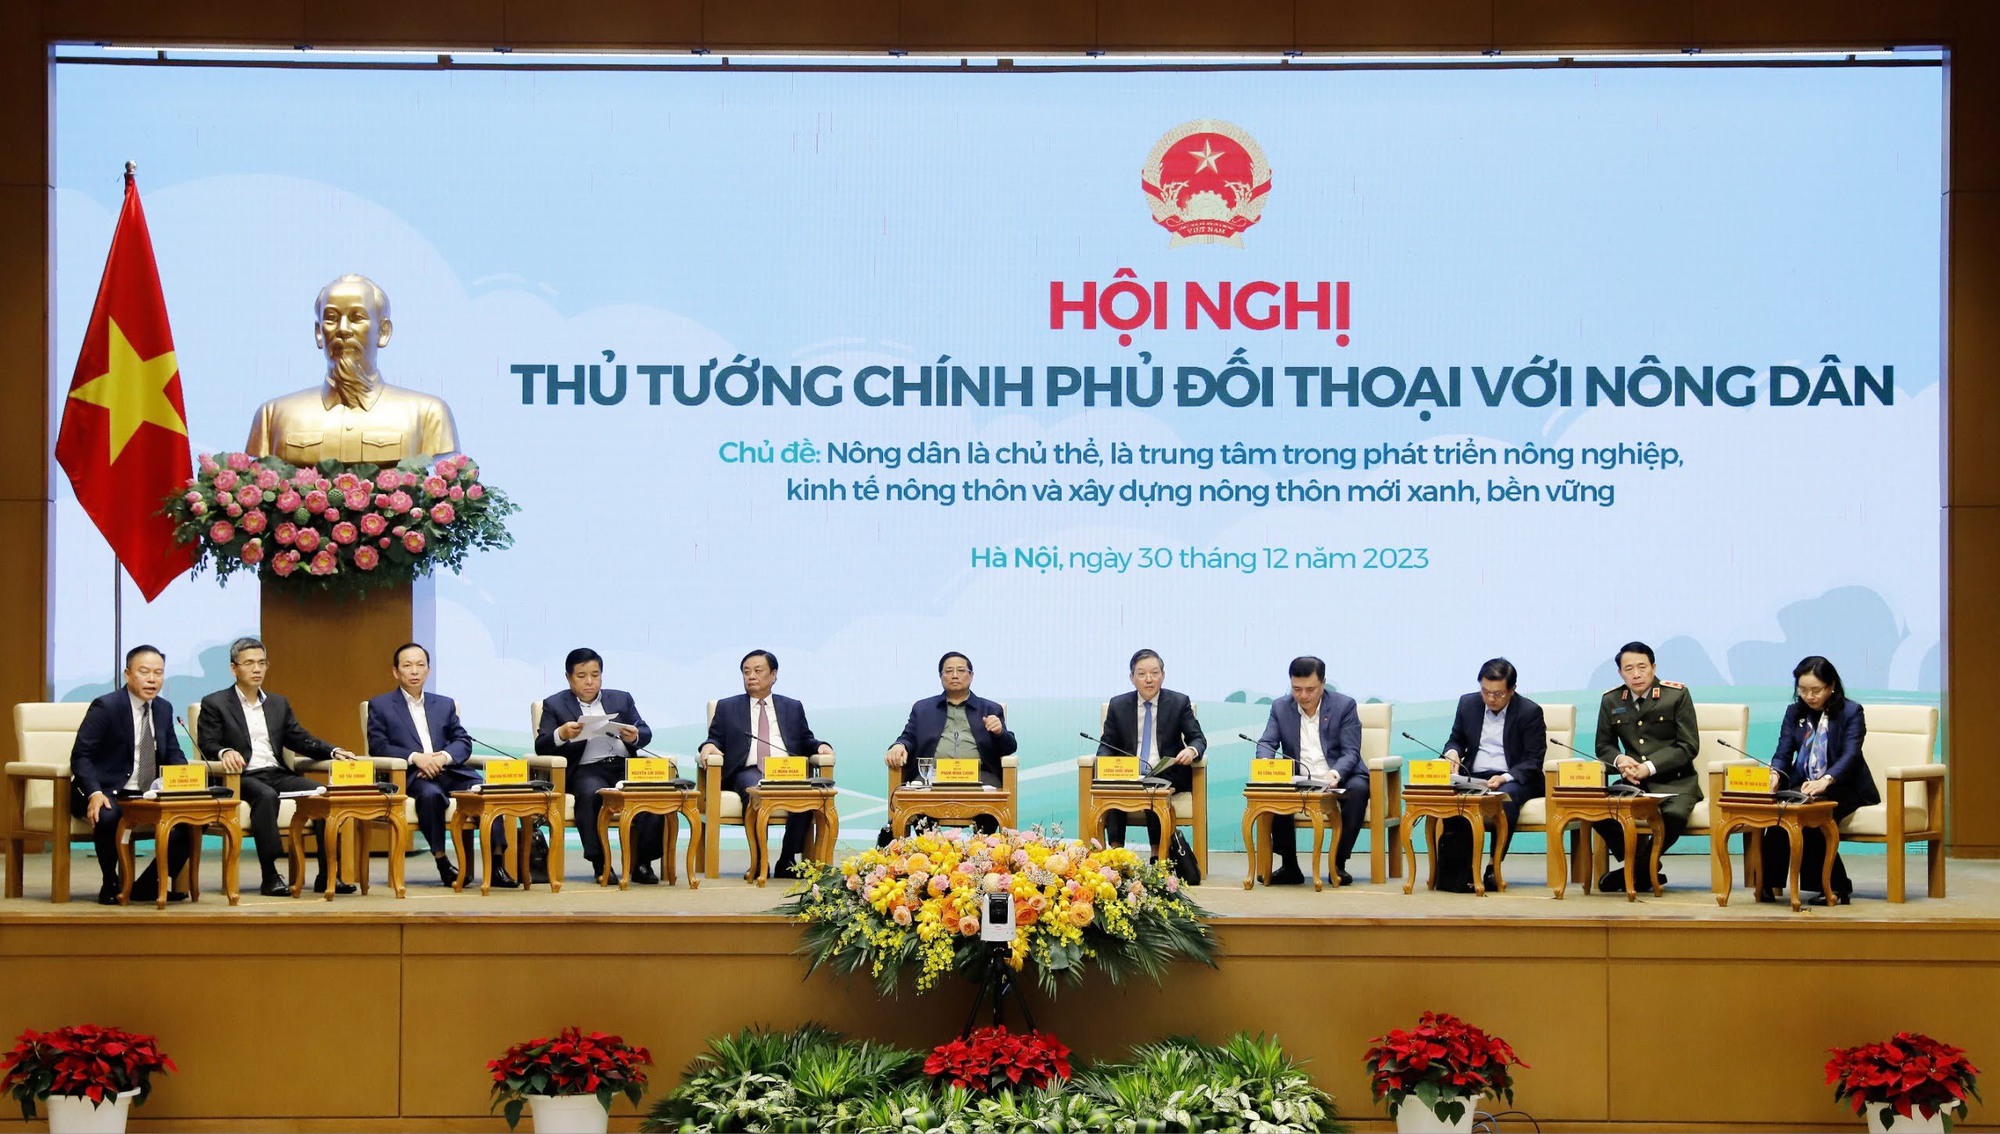 Thủ tướng Phạm Minh Chính: Nông dân xứng đáng là chủ thể, là trung tâm trong phát triển nông nghiệp, xây dựng nông thôn mới - Ảnh 1.